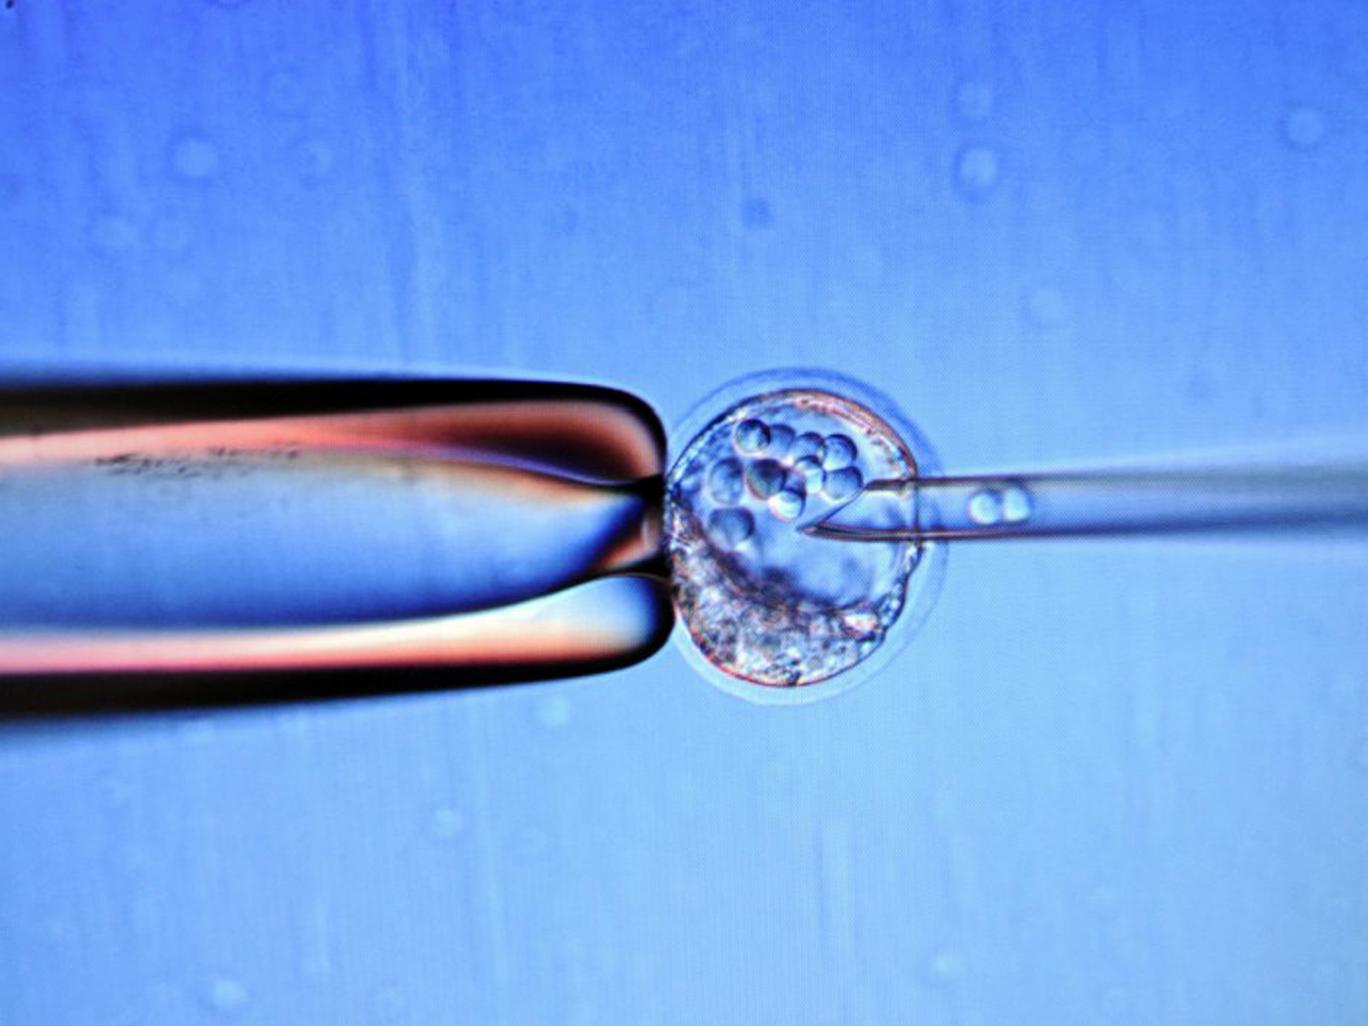 Tế bào phôi gốc để thực hiện phát minh mới. Ảnh AFP/Getty